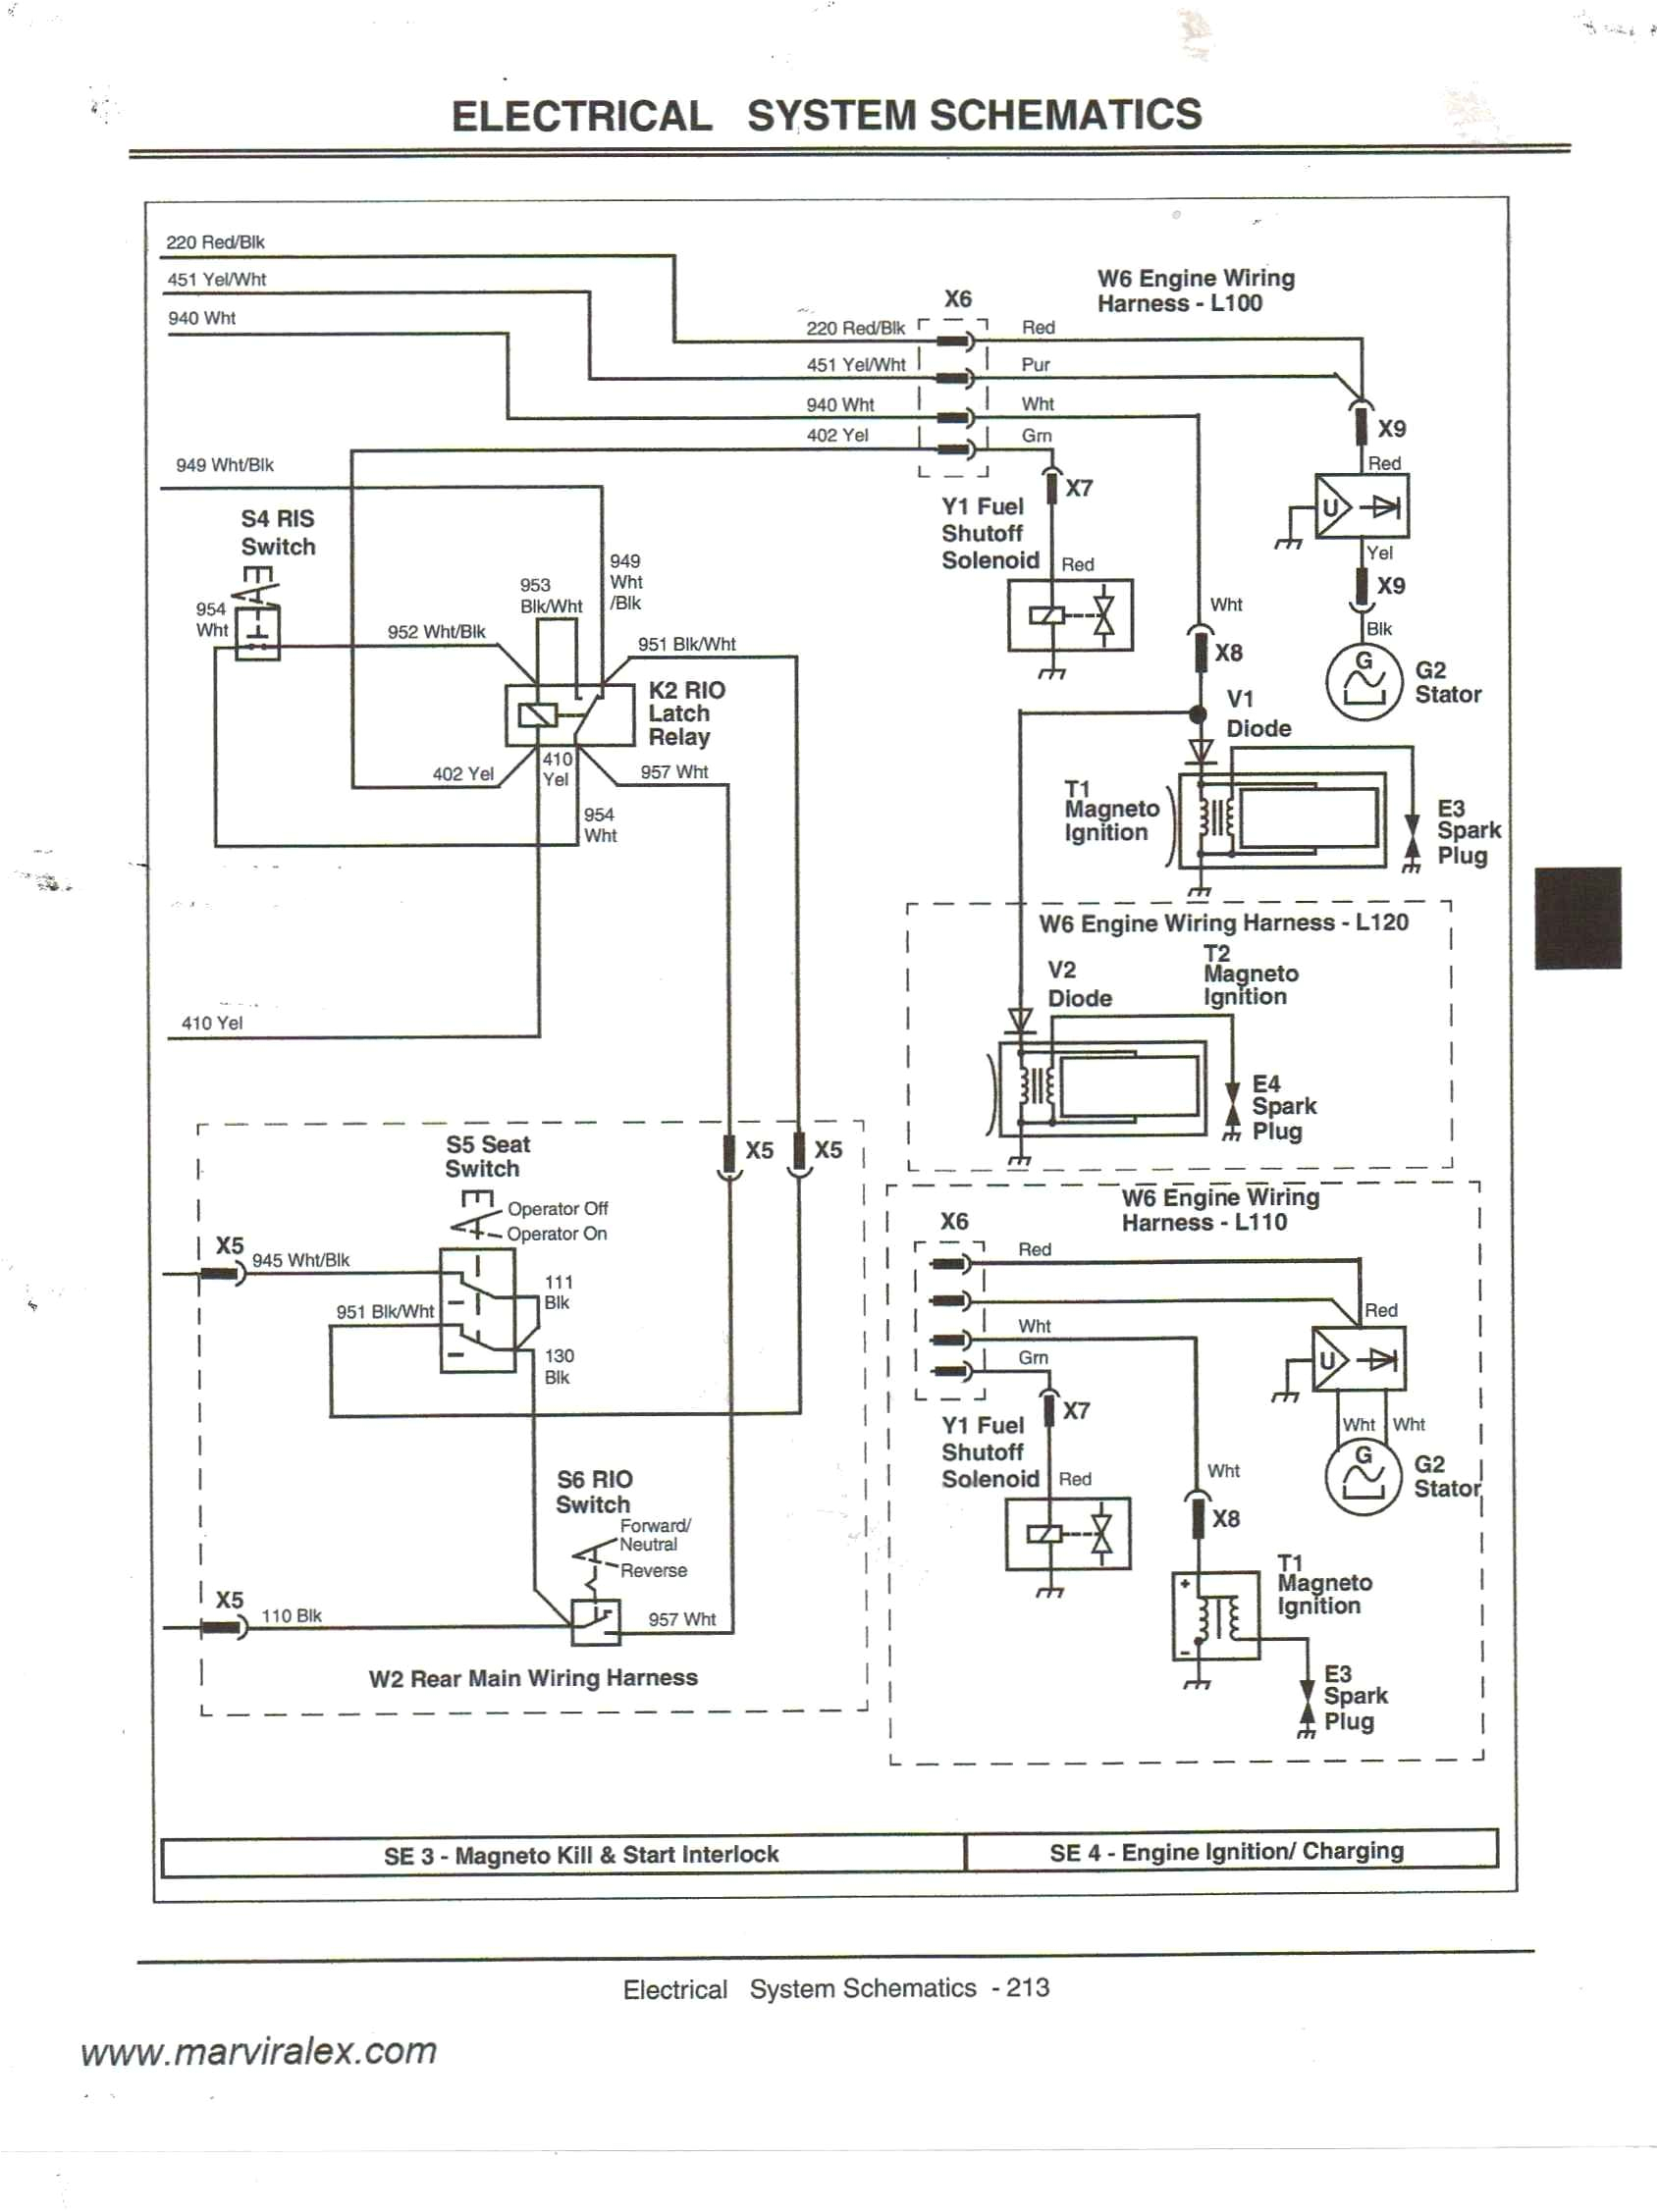 310g starter wiring schematic wiring diagrams bib 310g starter wiring schematic source 310g john deere